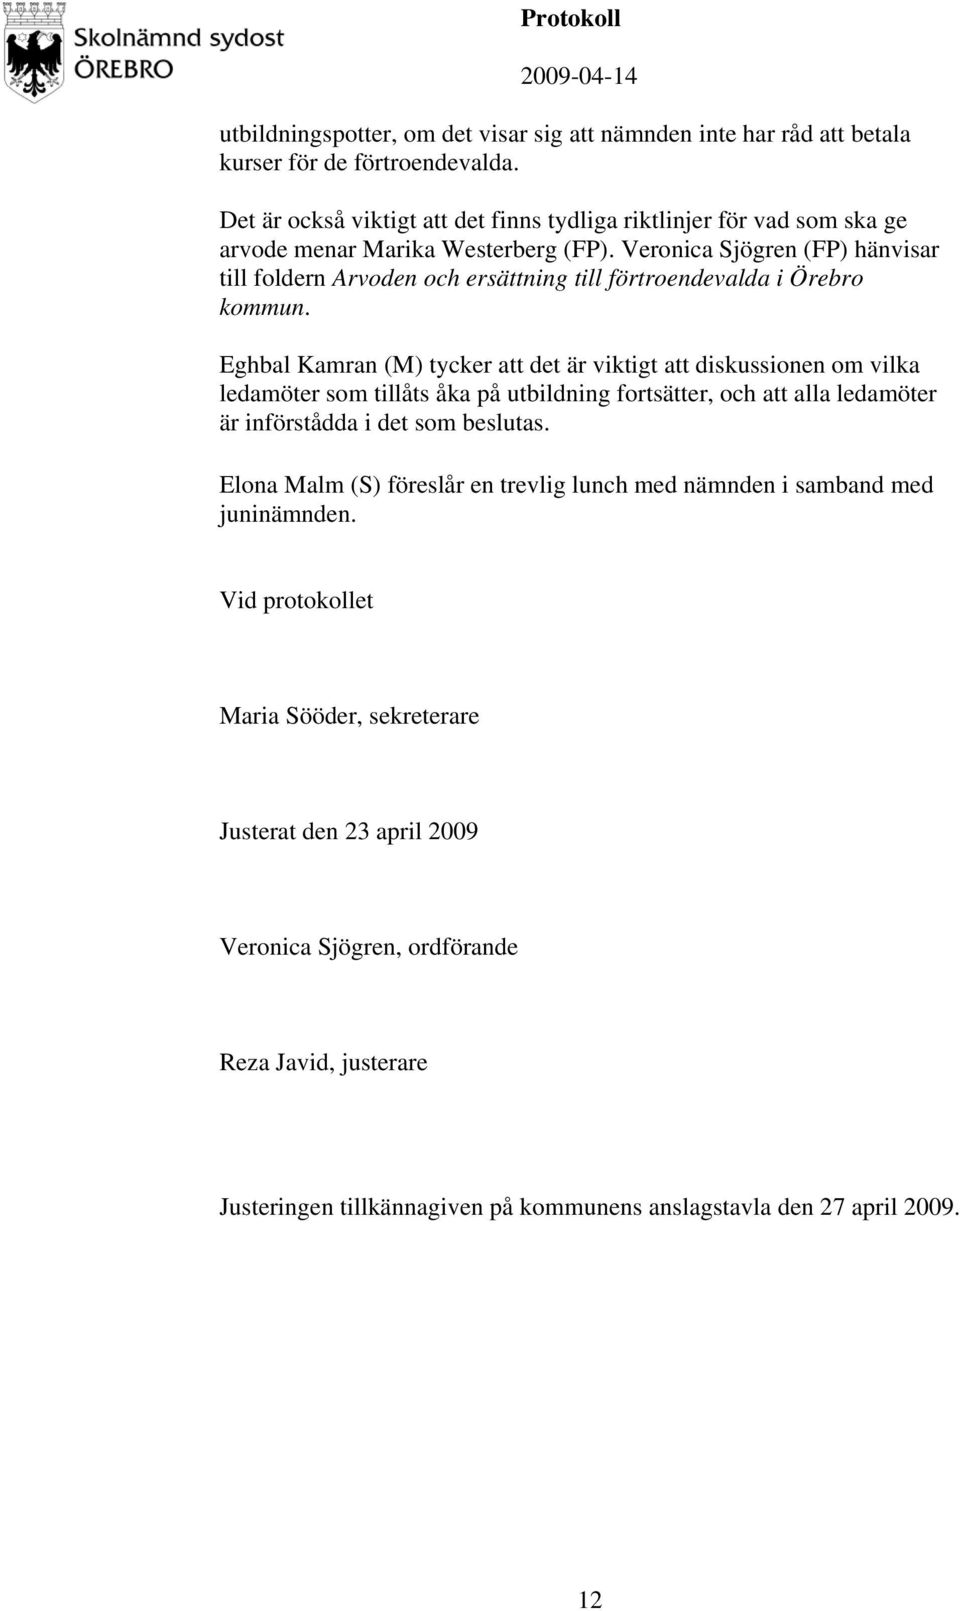 Veronica Sjögren (FP) hänvisar till foldern Arvoden och ersättning till förtroendevalda i Örebro kommun.